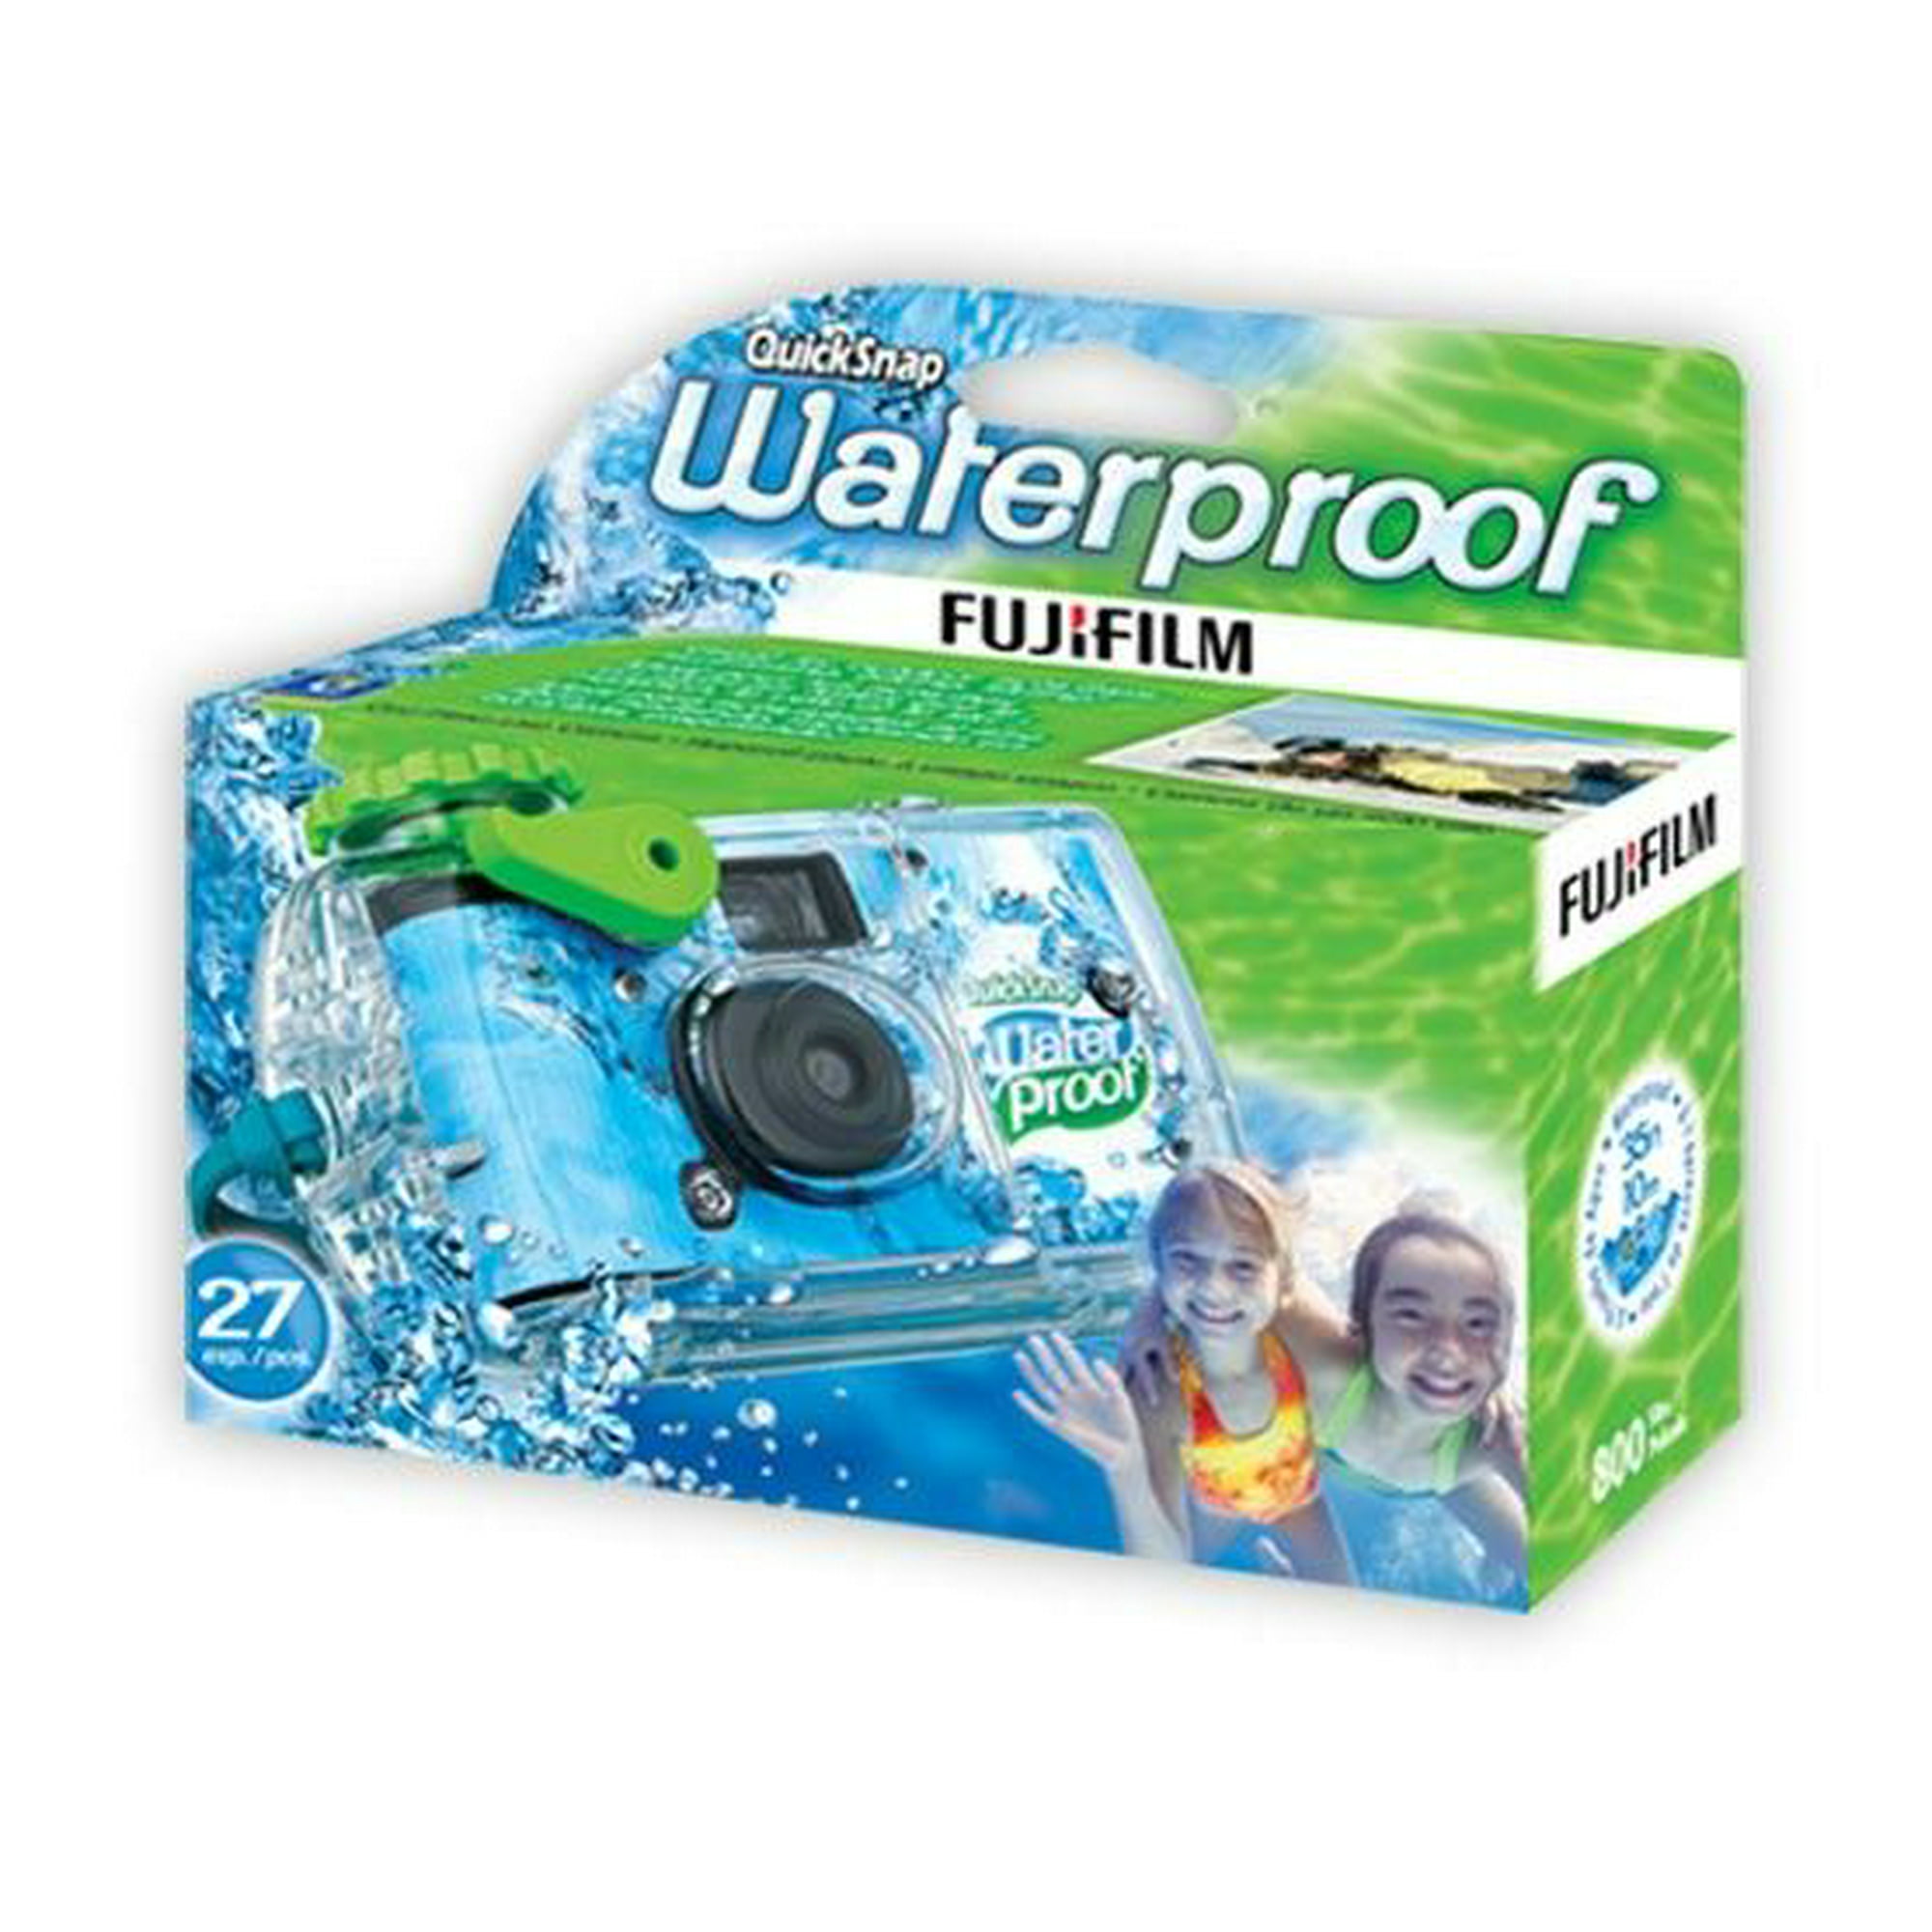 Paquete de 4 cámaras desechables subacuáticas impermeables de un solo uso,  1.378 in, película ISO 400, 27 exposición para verano, playa, vacaciones